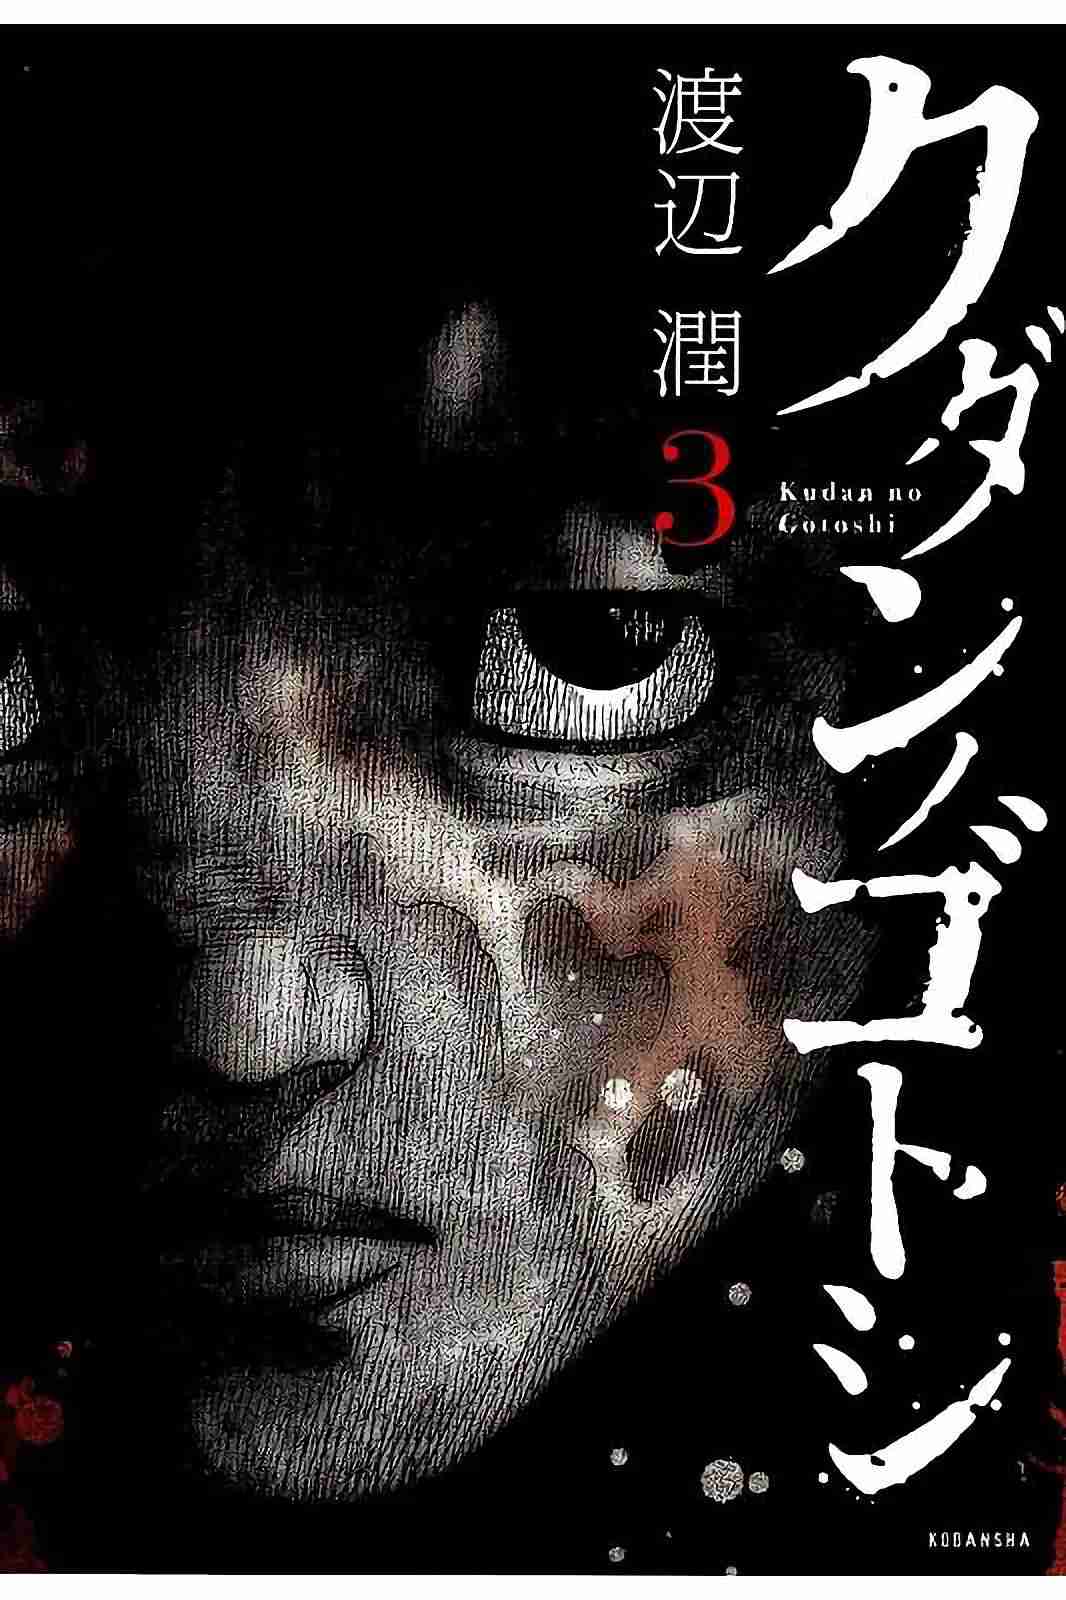 Kudan no Gotoshi Vol. 3 Ch. 22 Shinji Fujisawa < Part 7 > Youta Onodera < Part 2 >